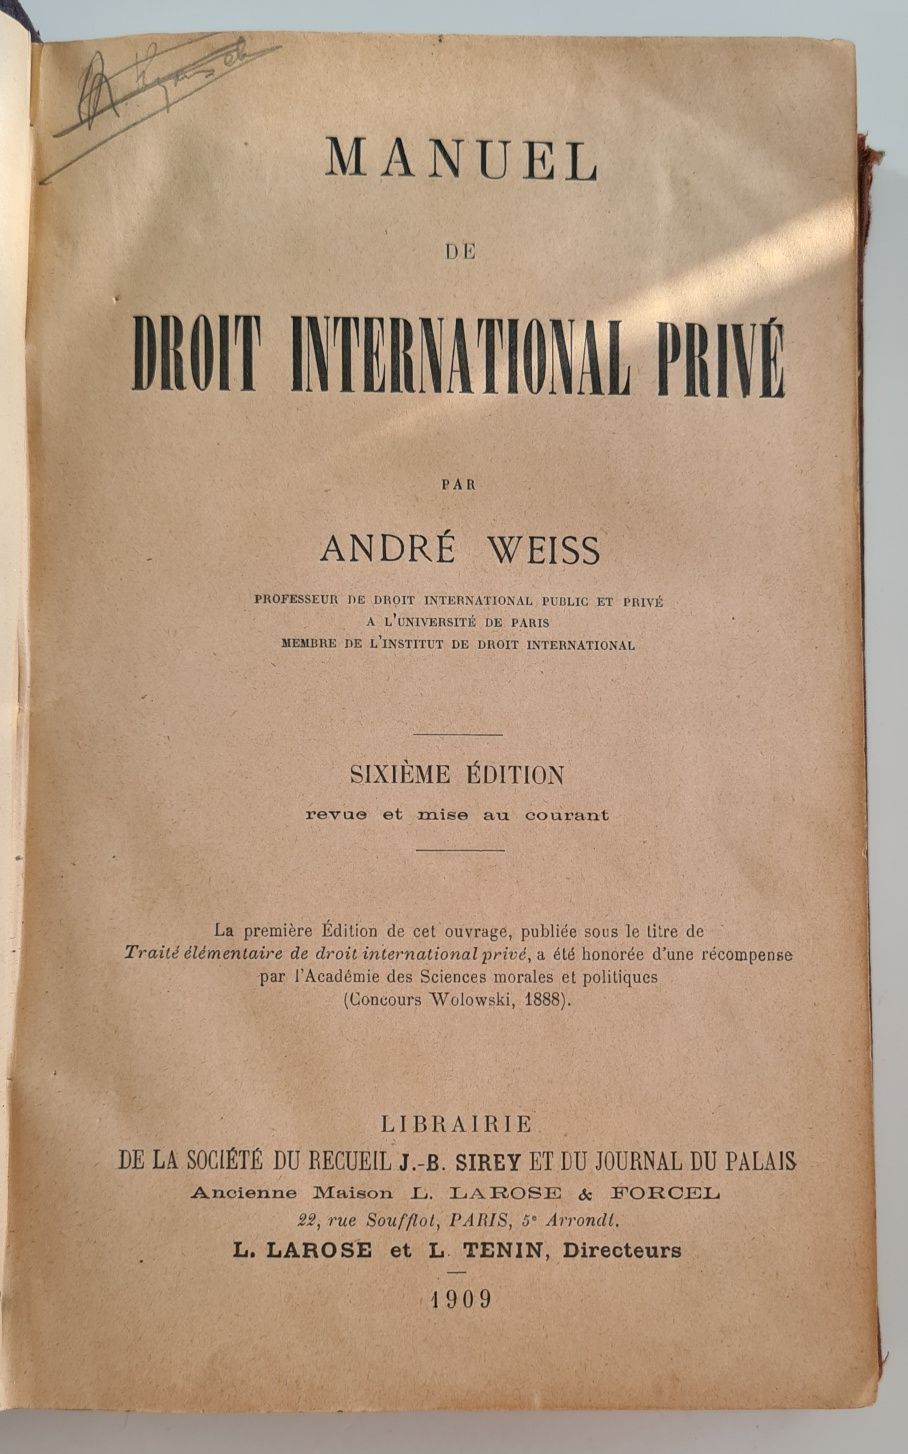 Manuel de Droit International Prive, 1909, A Weiss